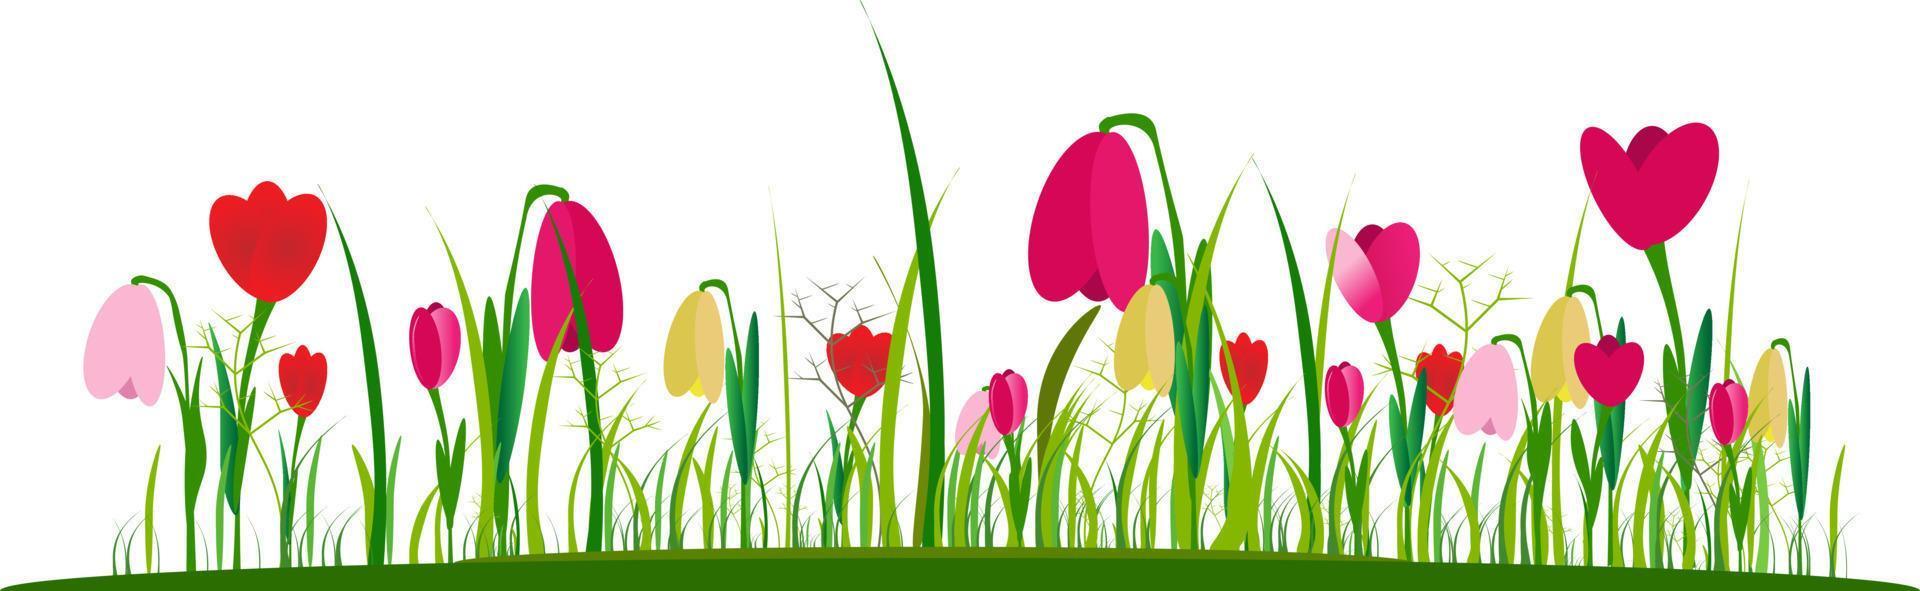 Wald- und Gartenblumen des frühen Frühlings, die auf einem weißen Vektorsatz hervorgehoben werden. illustration des naturblumenfrühlings und -sommers im garten vektor